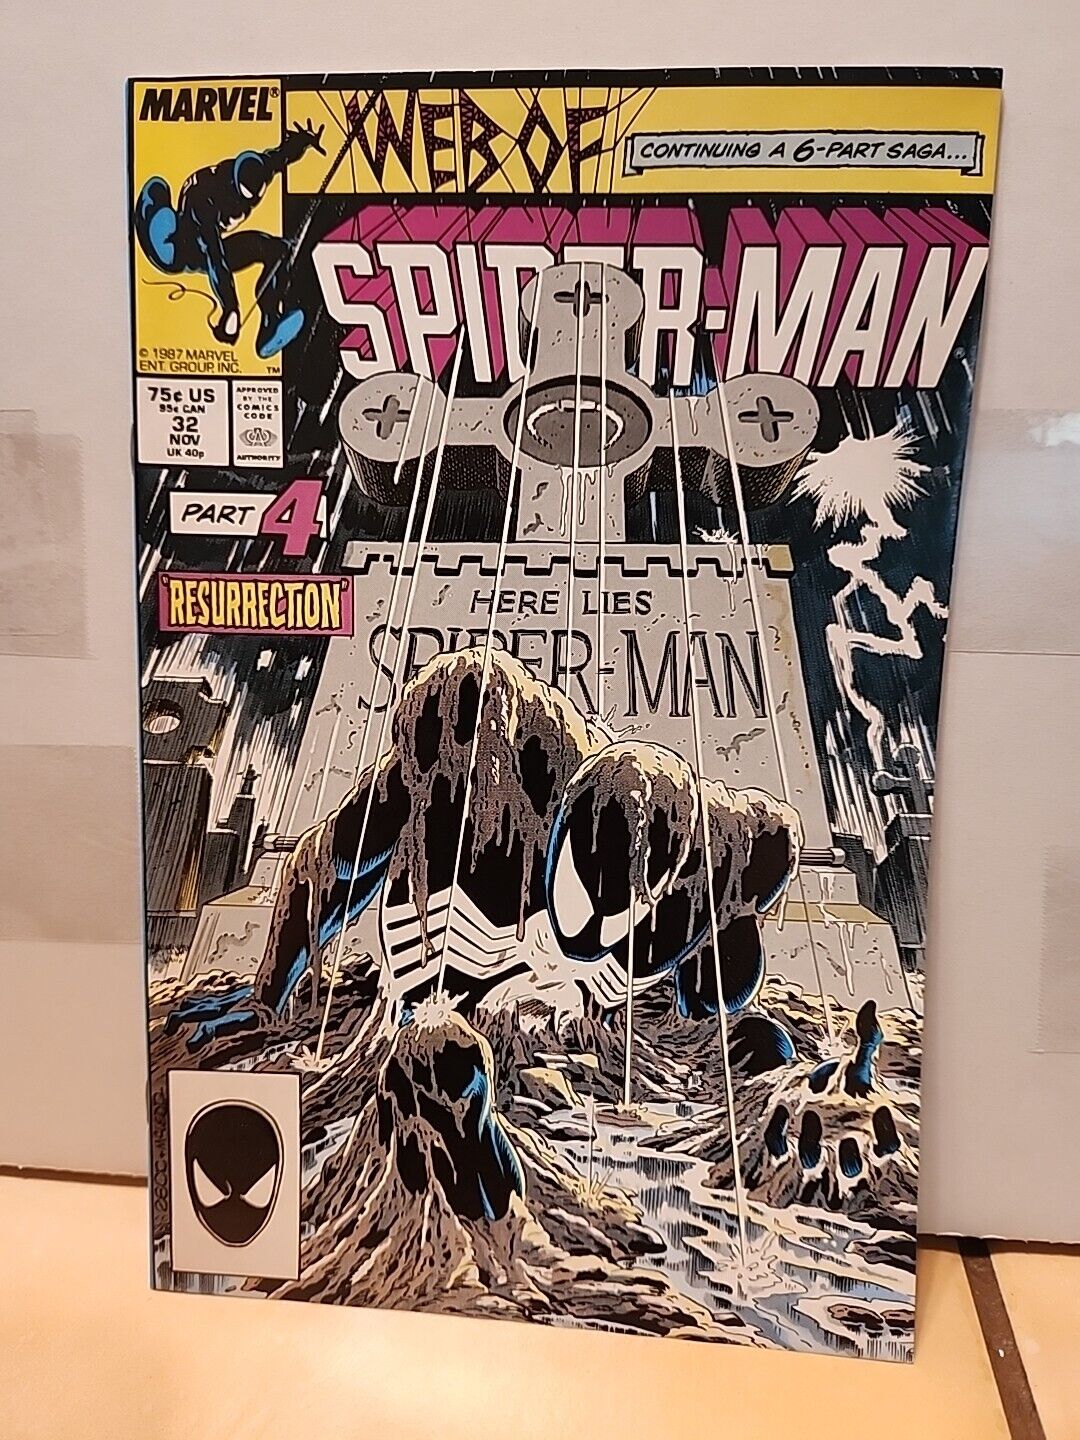 Web of Spider-Man #32     Kraven's Last Hunt Part 4       Marvel 1987  